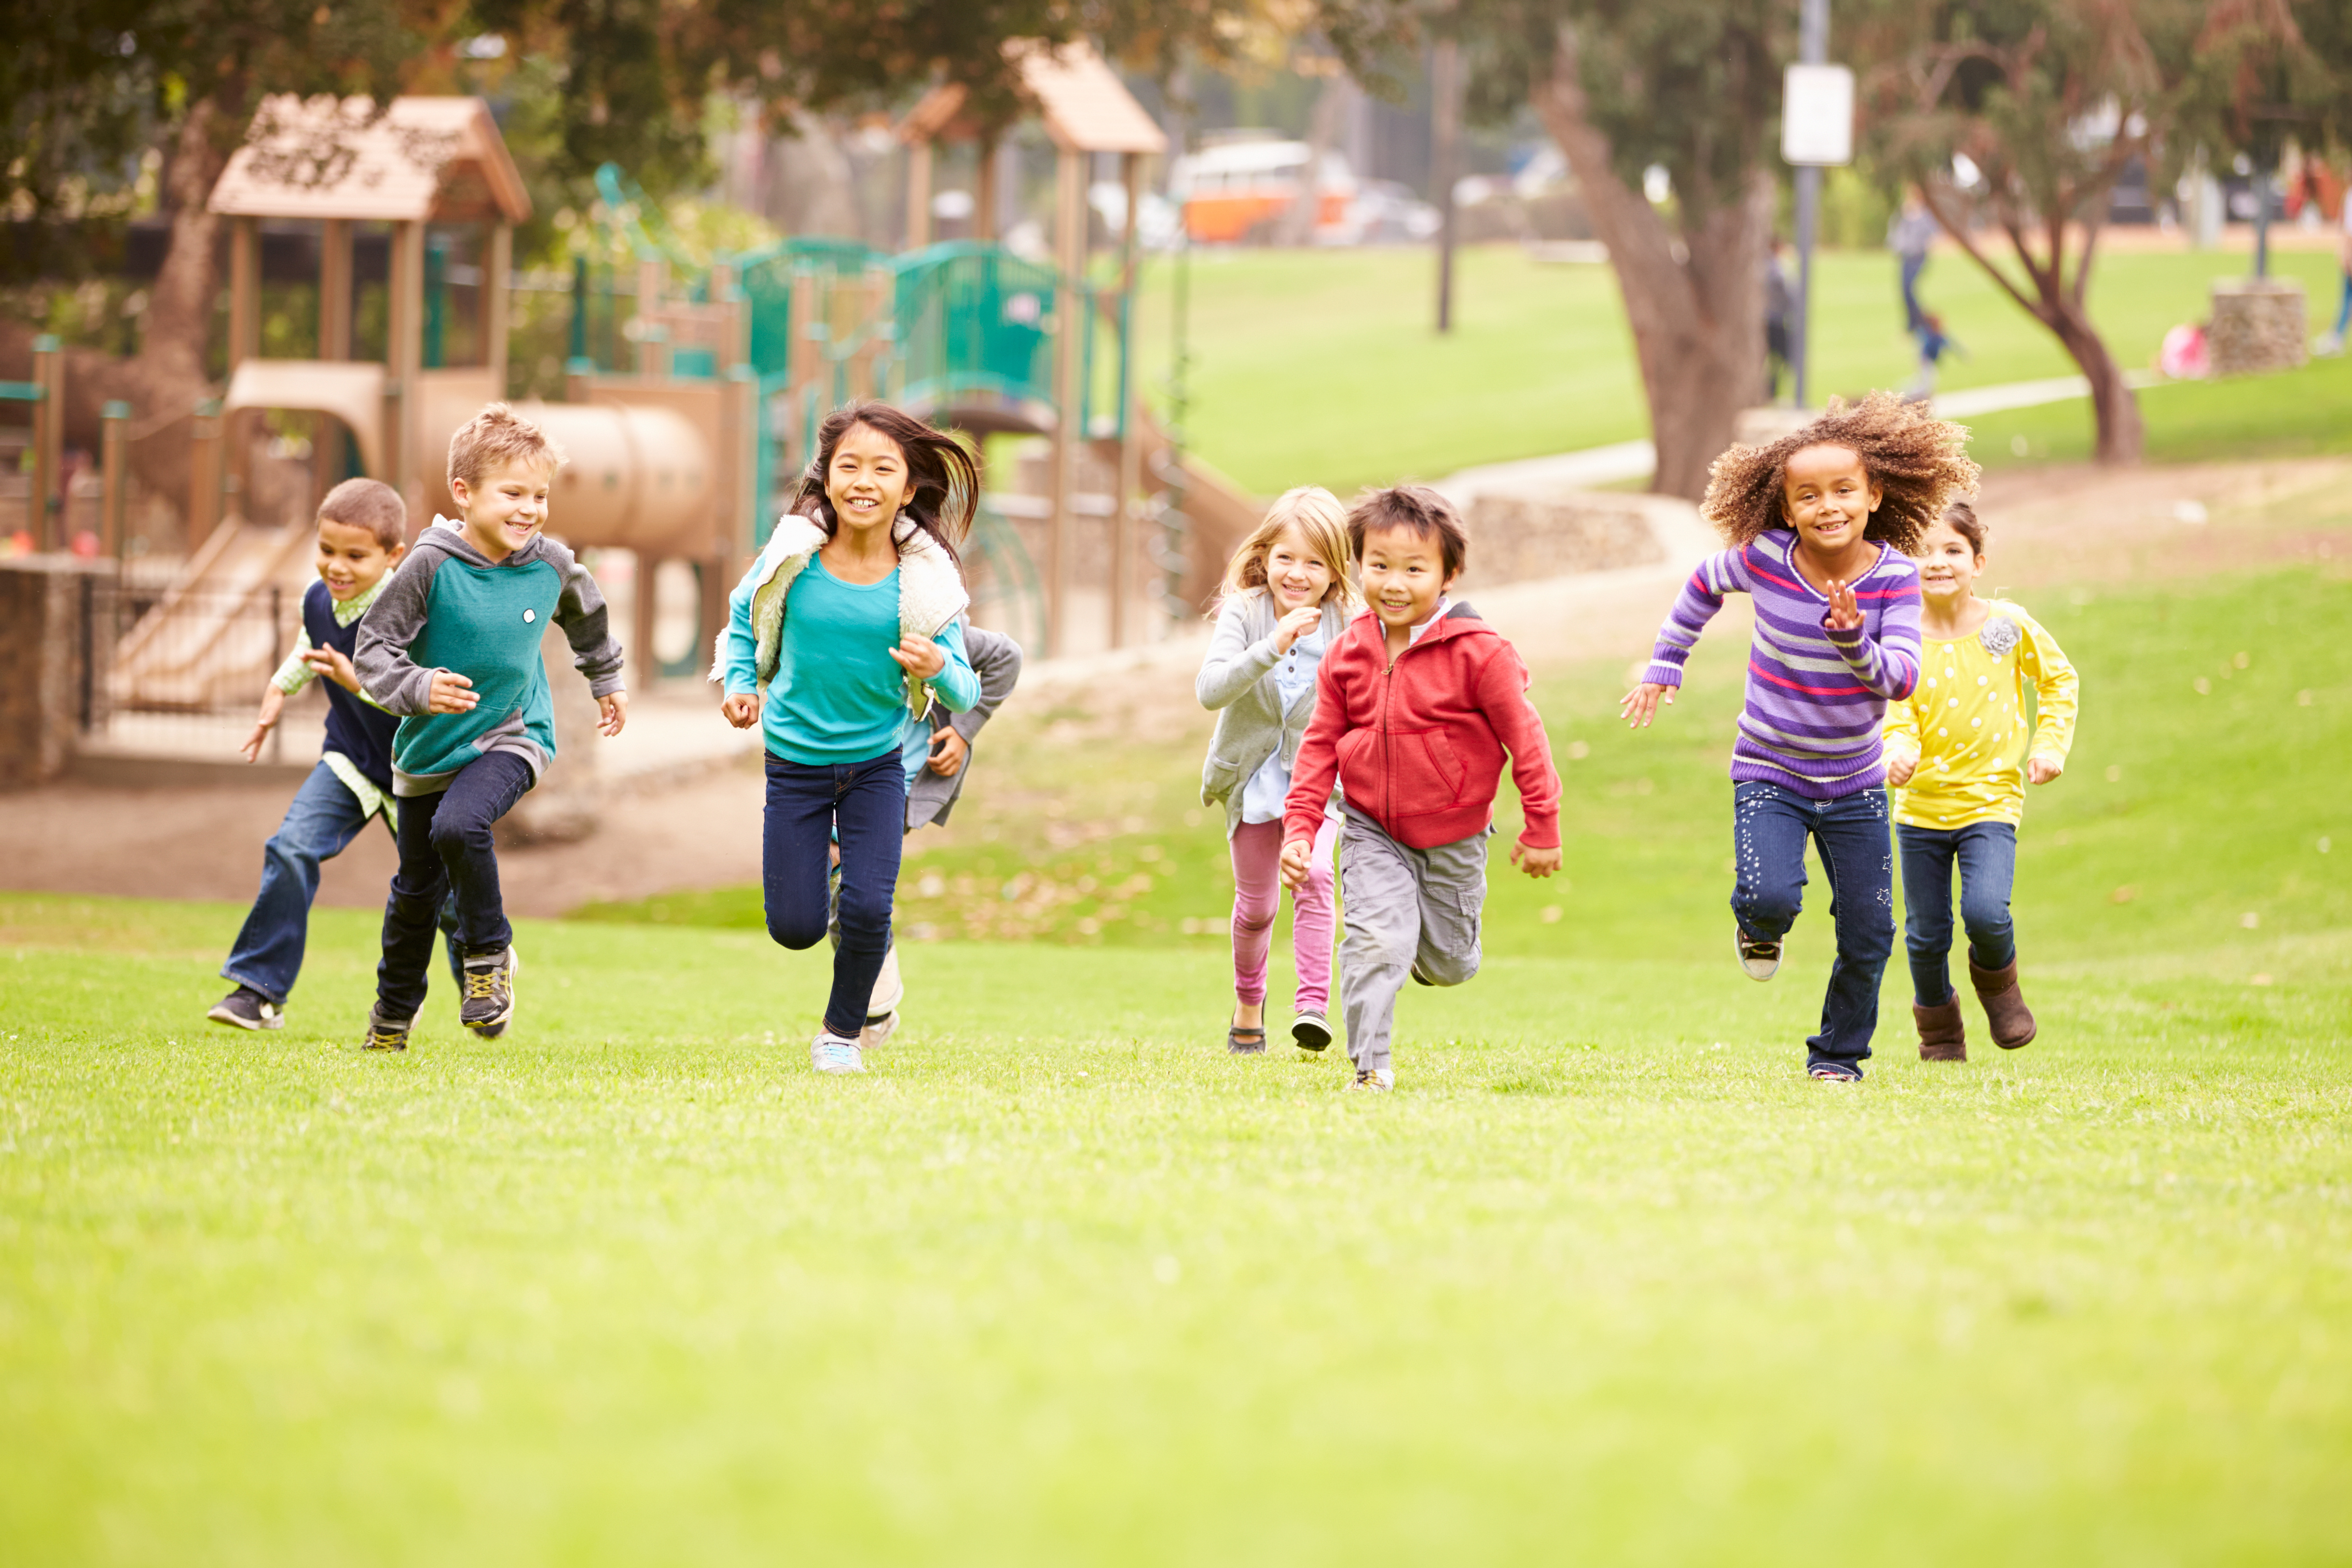 Were you happy at school. Дети в парке. Счастливый ребенок. Радостные дети. Дети бегут.